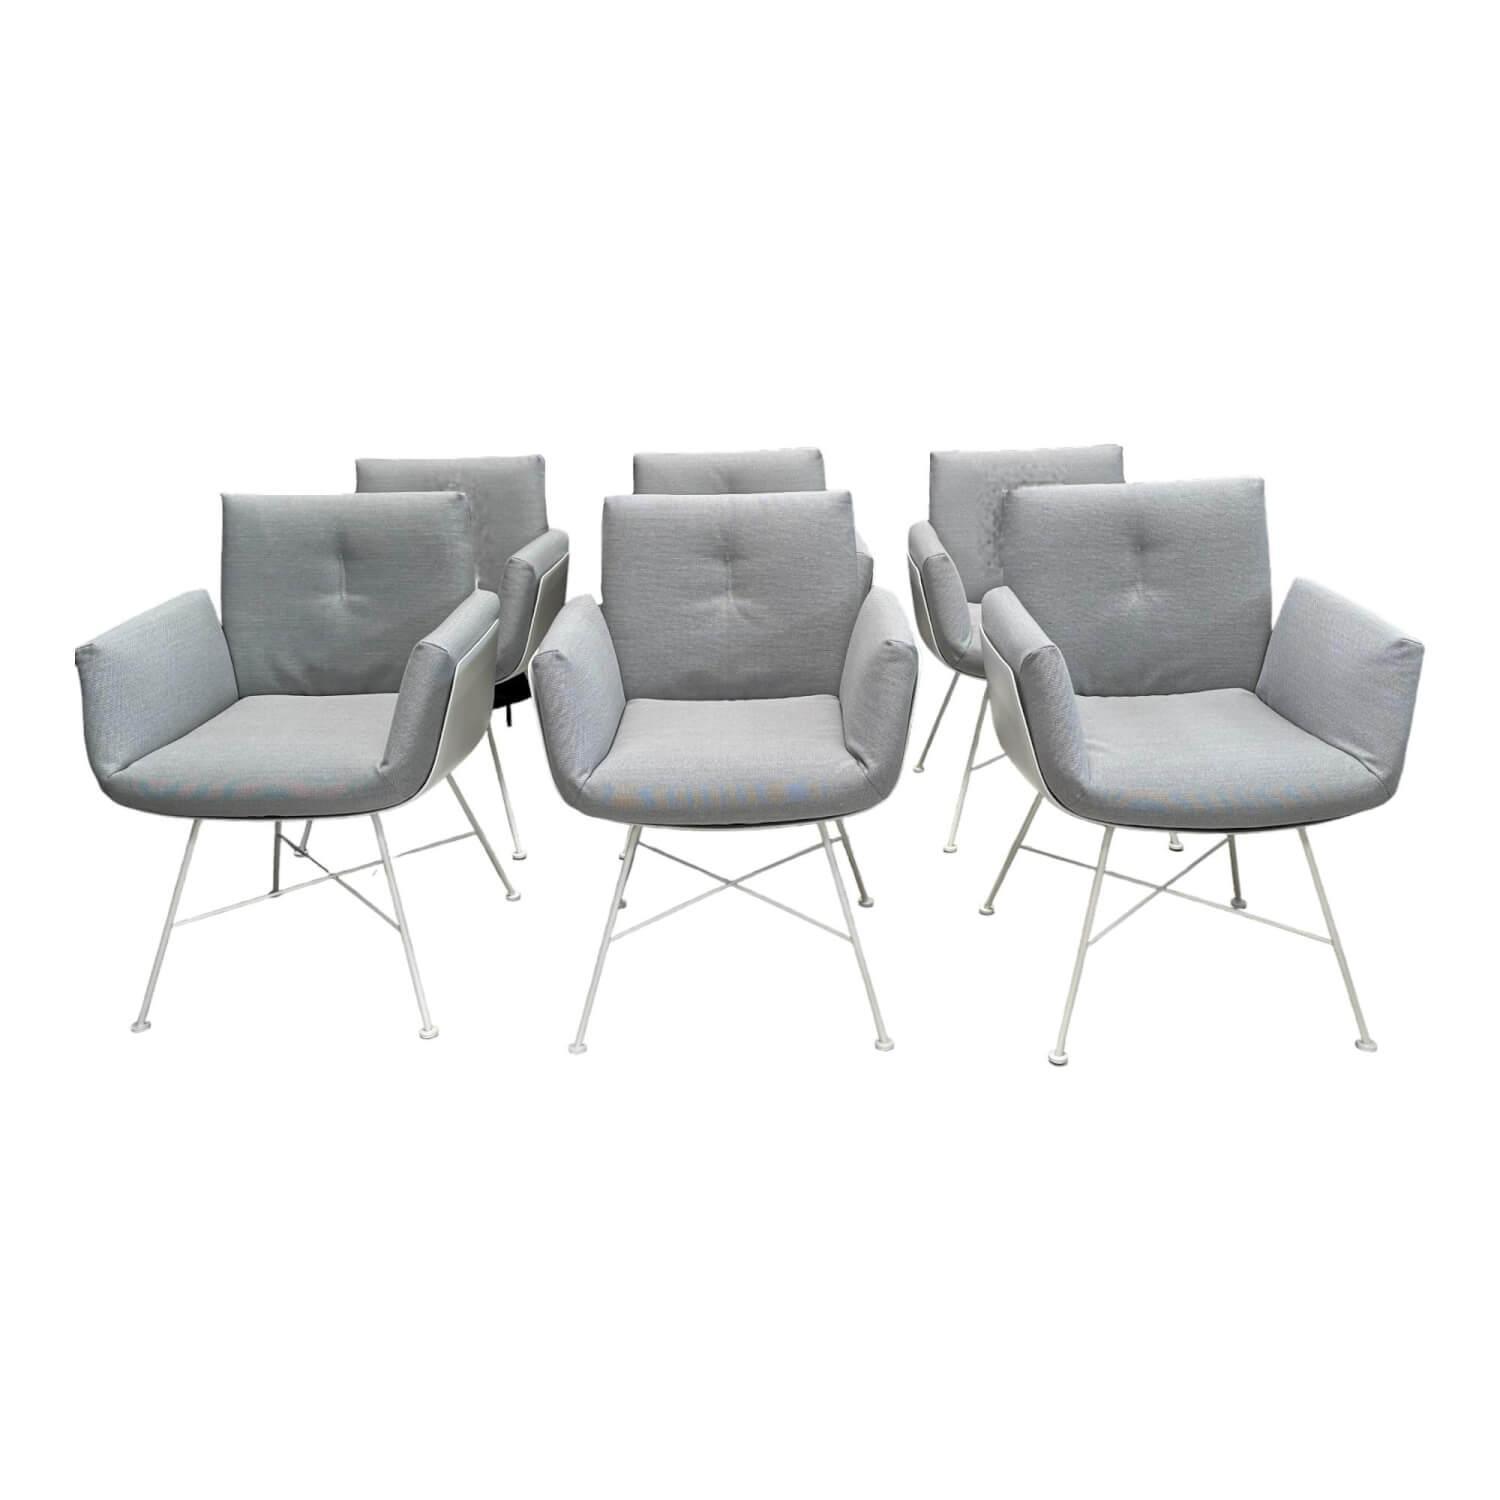 6er Set Stuhl Alvo Stoff 9574 Weiß Grau Schale K03 Kunststoff Weiß 4 Fuß Gestell P103 Pulver Weiß